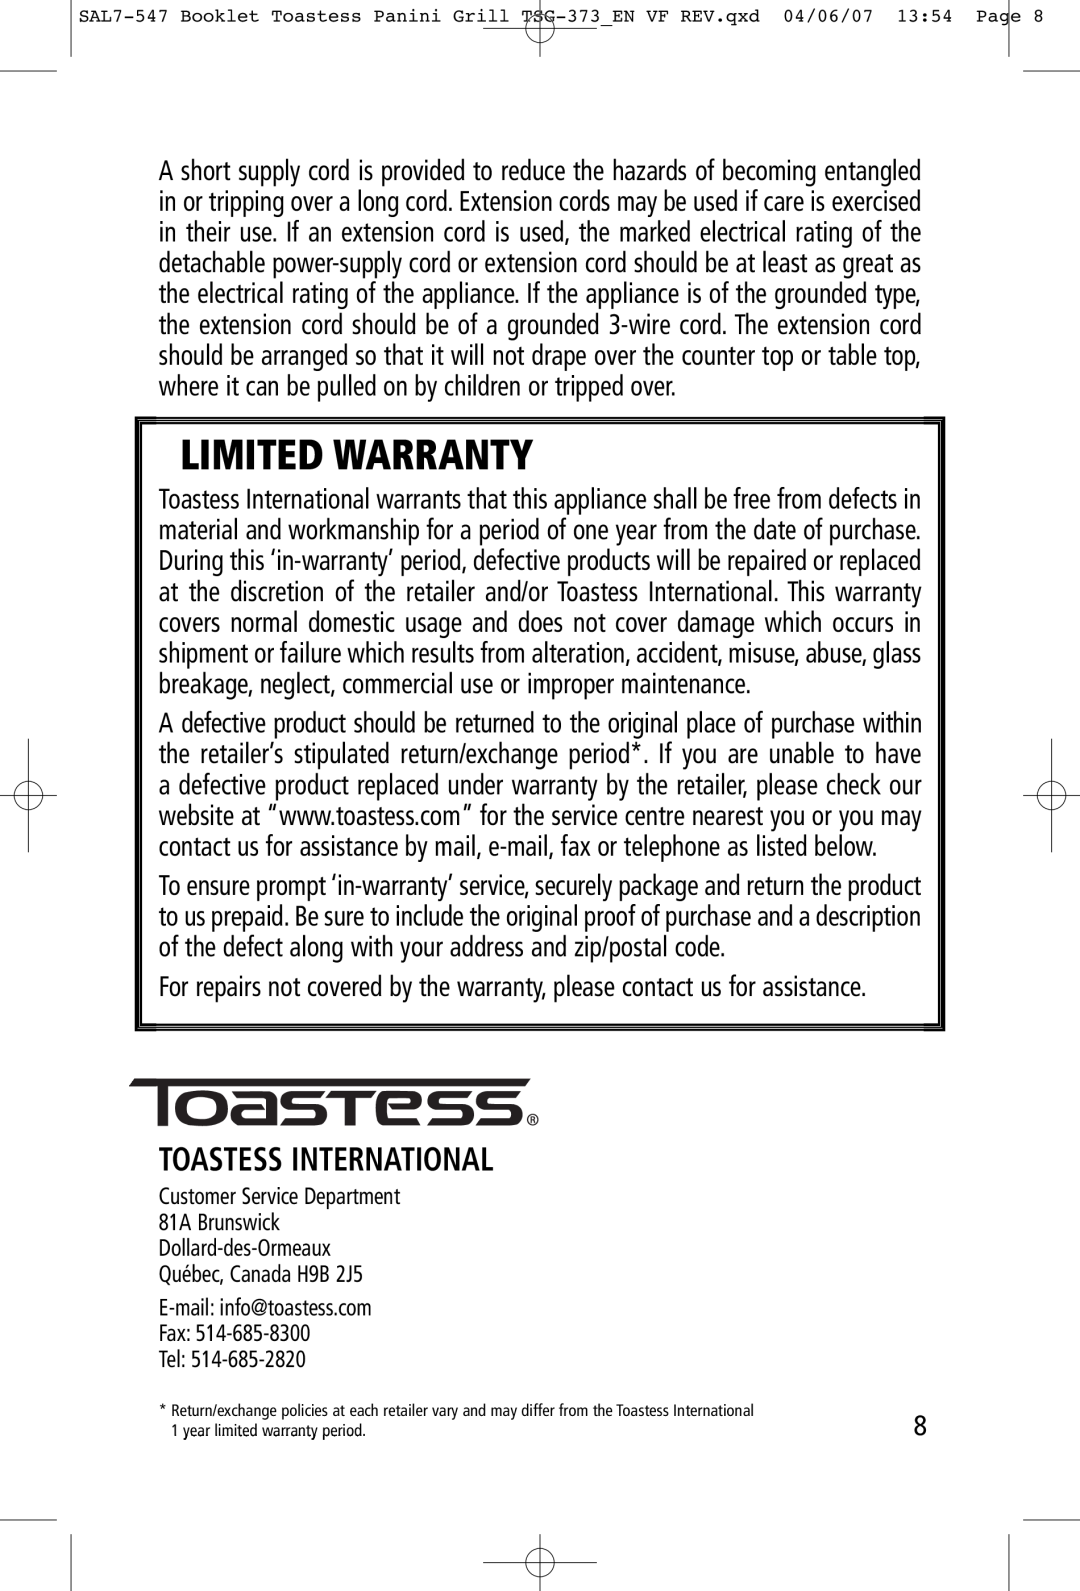 Toastess TSG-373 manual Toastess International, Limited Warranty 